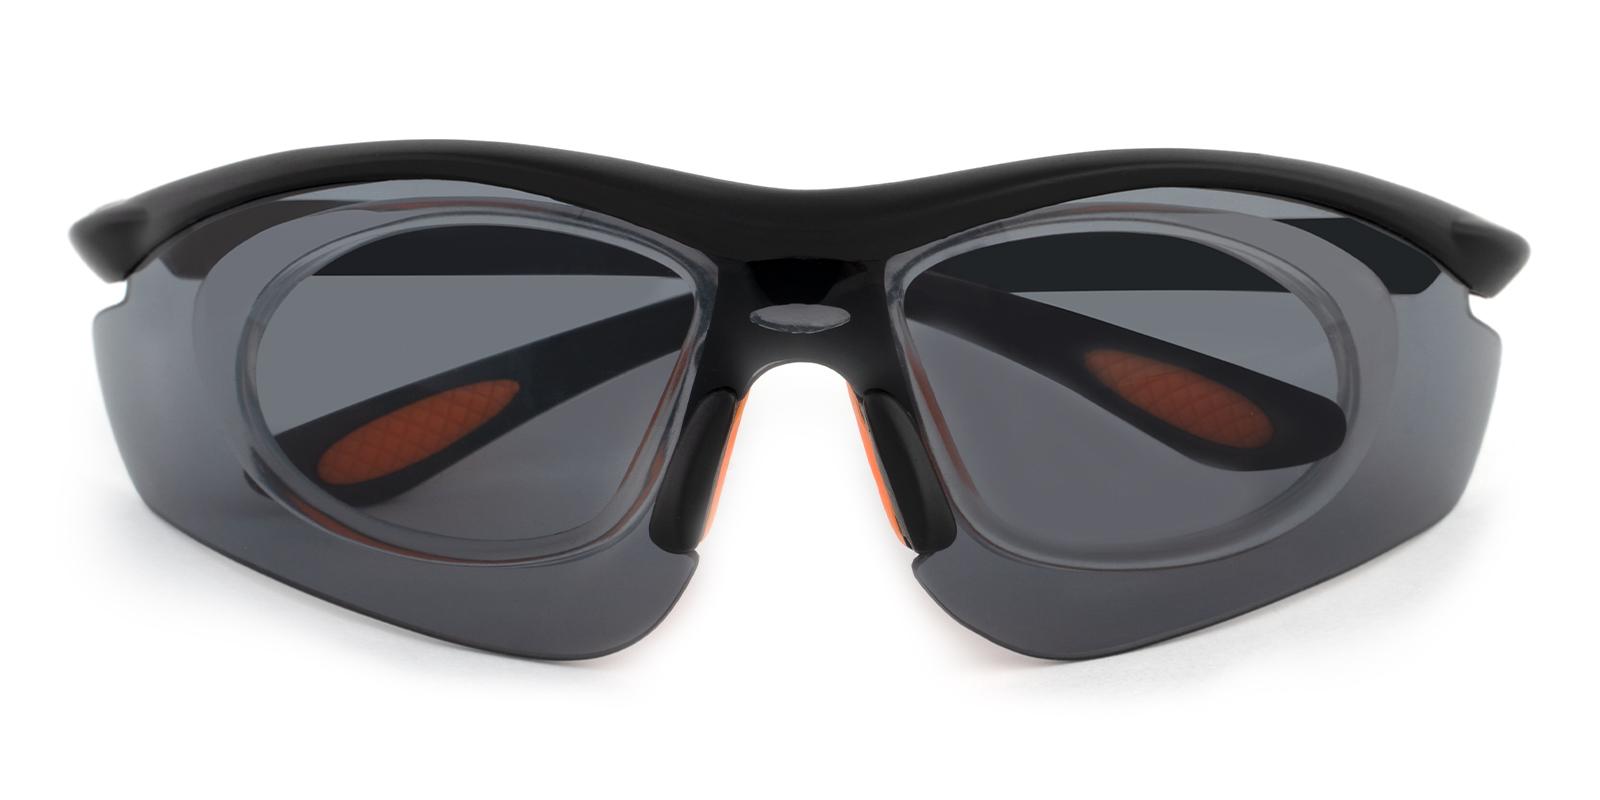 Gustavus Black Plastic NosePads , SportsGlasses Frames from ABBE Glasses